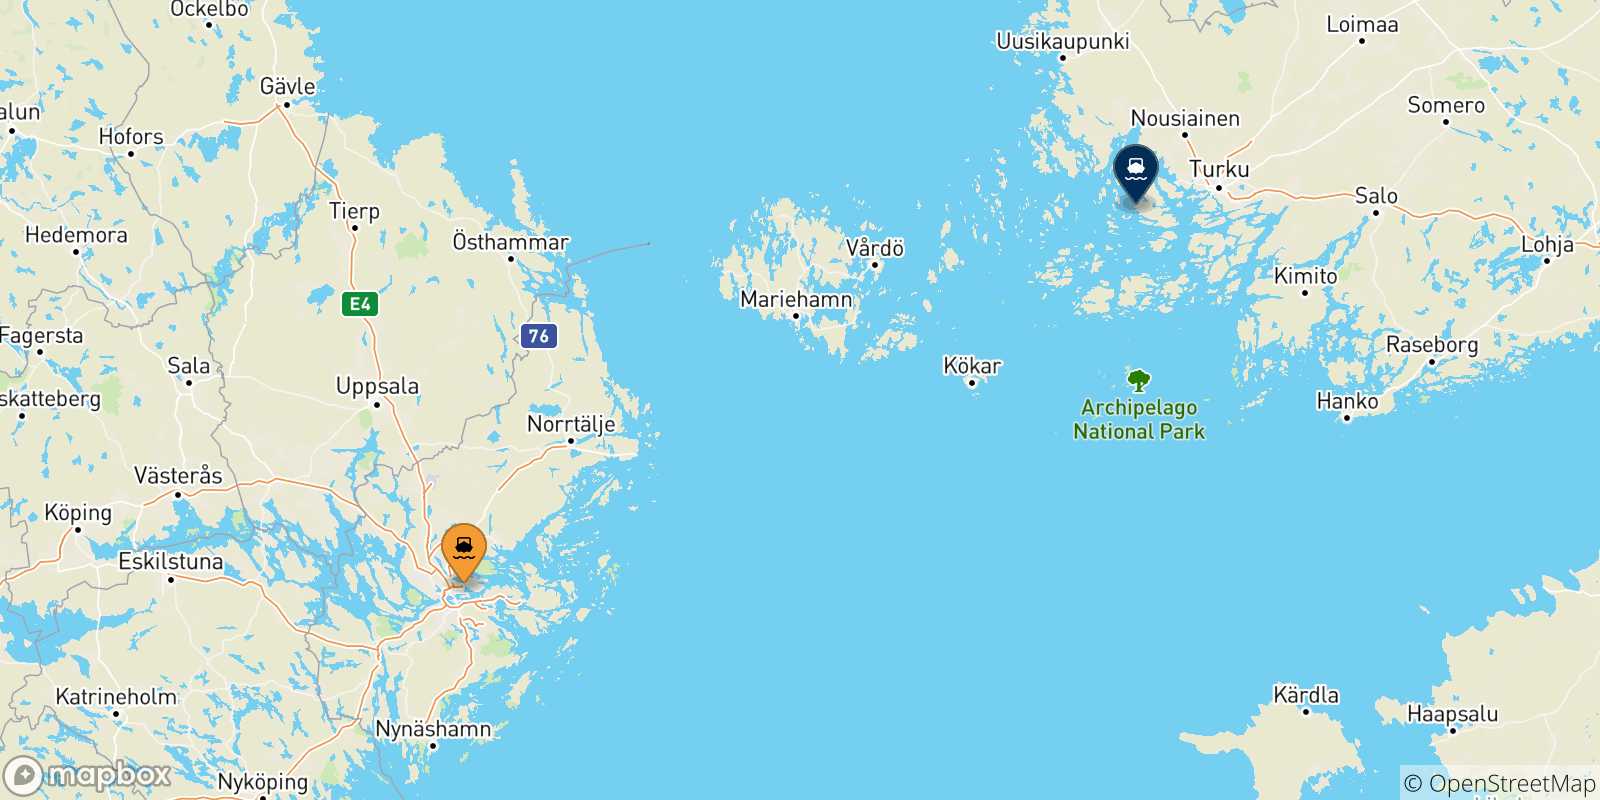 Mappa delle possibili rotte tra la Svezia e Turku